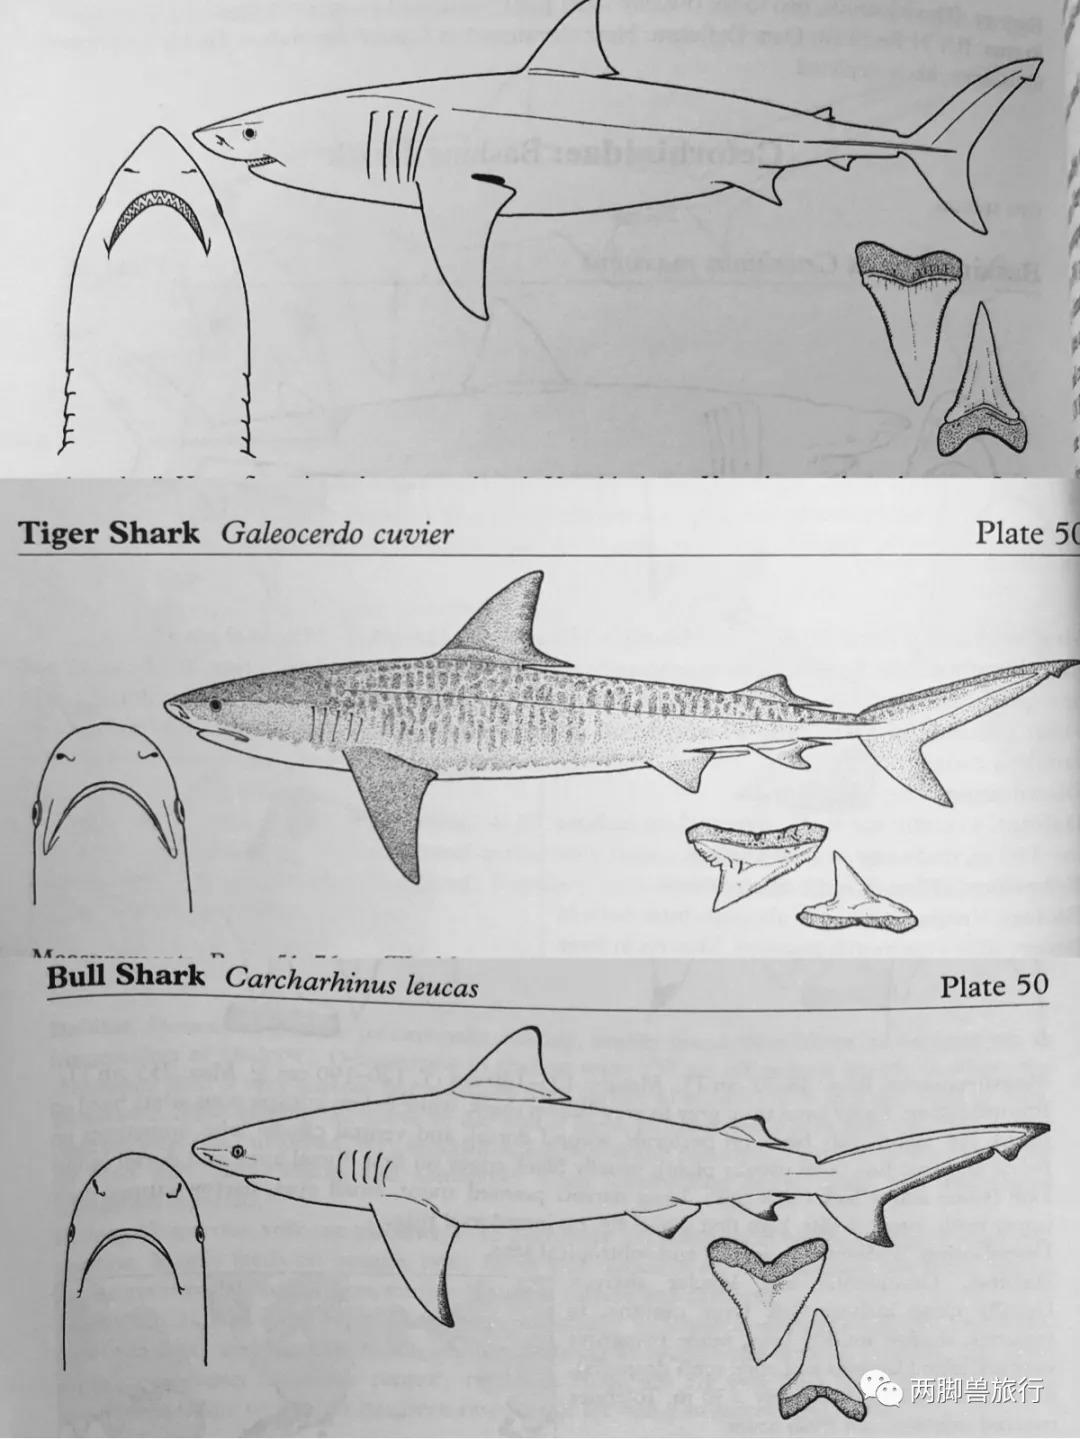 除了通过咬伤特征去判断,甚至会通过遗留在伤口的鲨鱼牙齿做dna分析